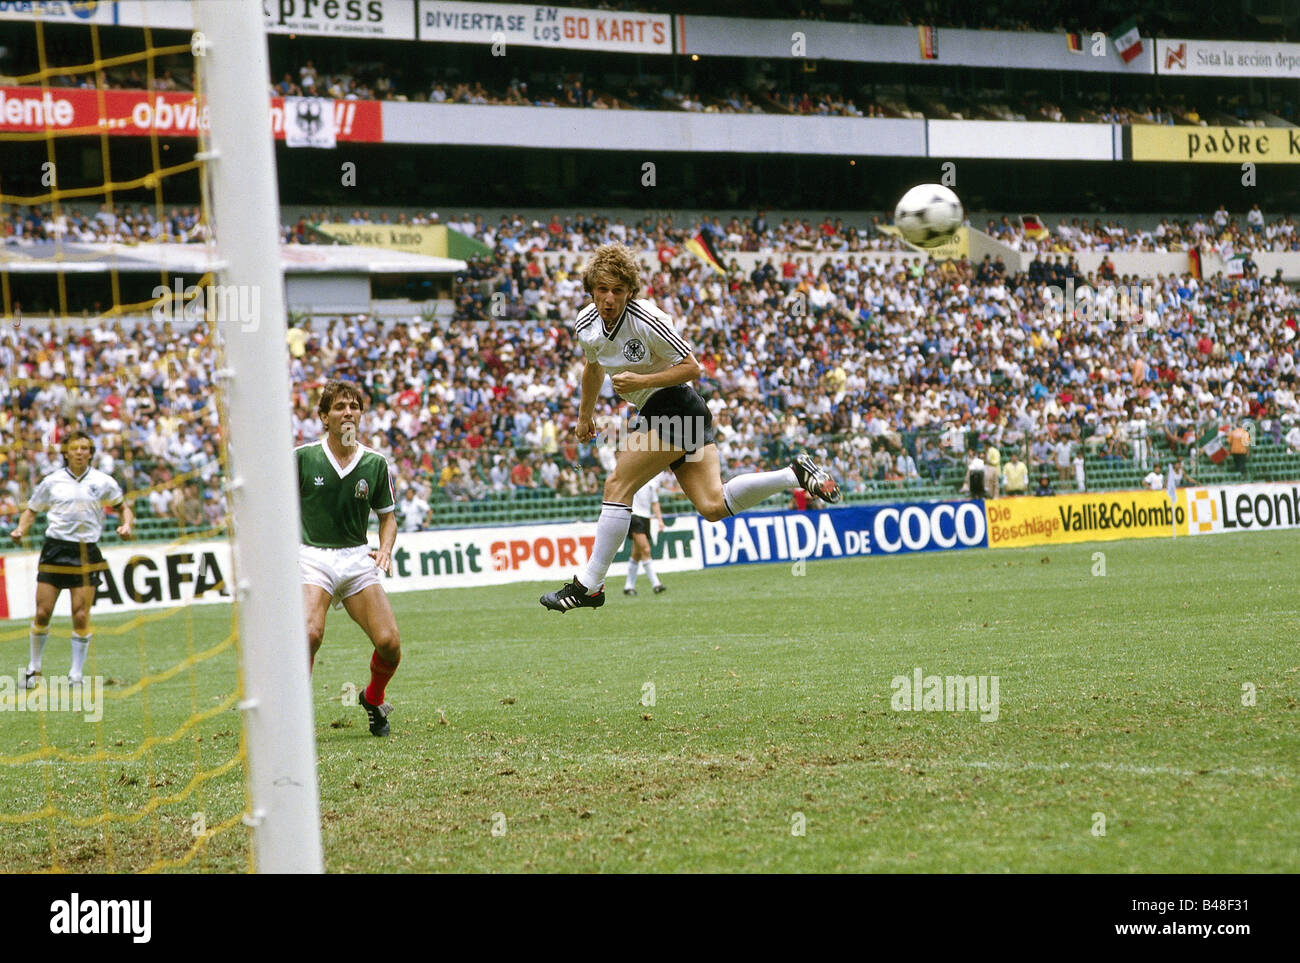 Deportes / Deportes, fútbol, fútbol, juego amistoso, Alemania contra México (0:2) en la ciudad de México, 15.6.1985, Foto de stock